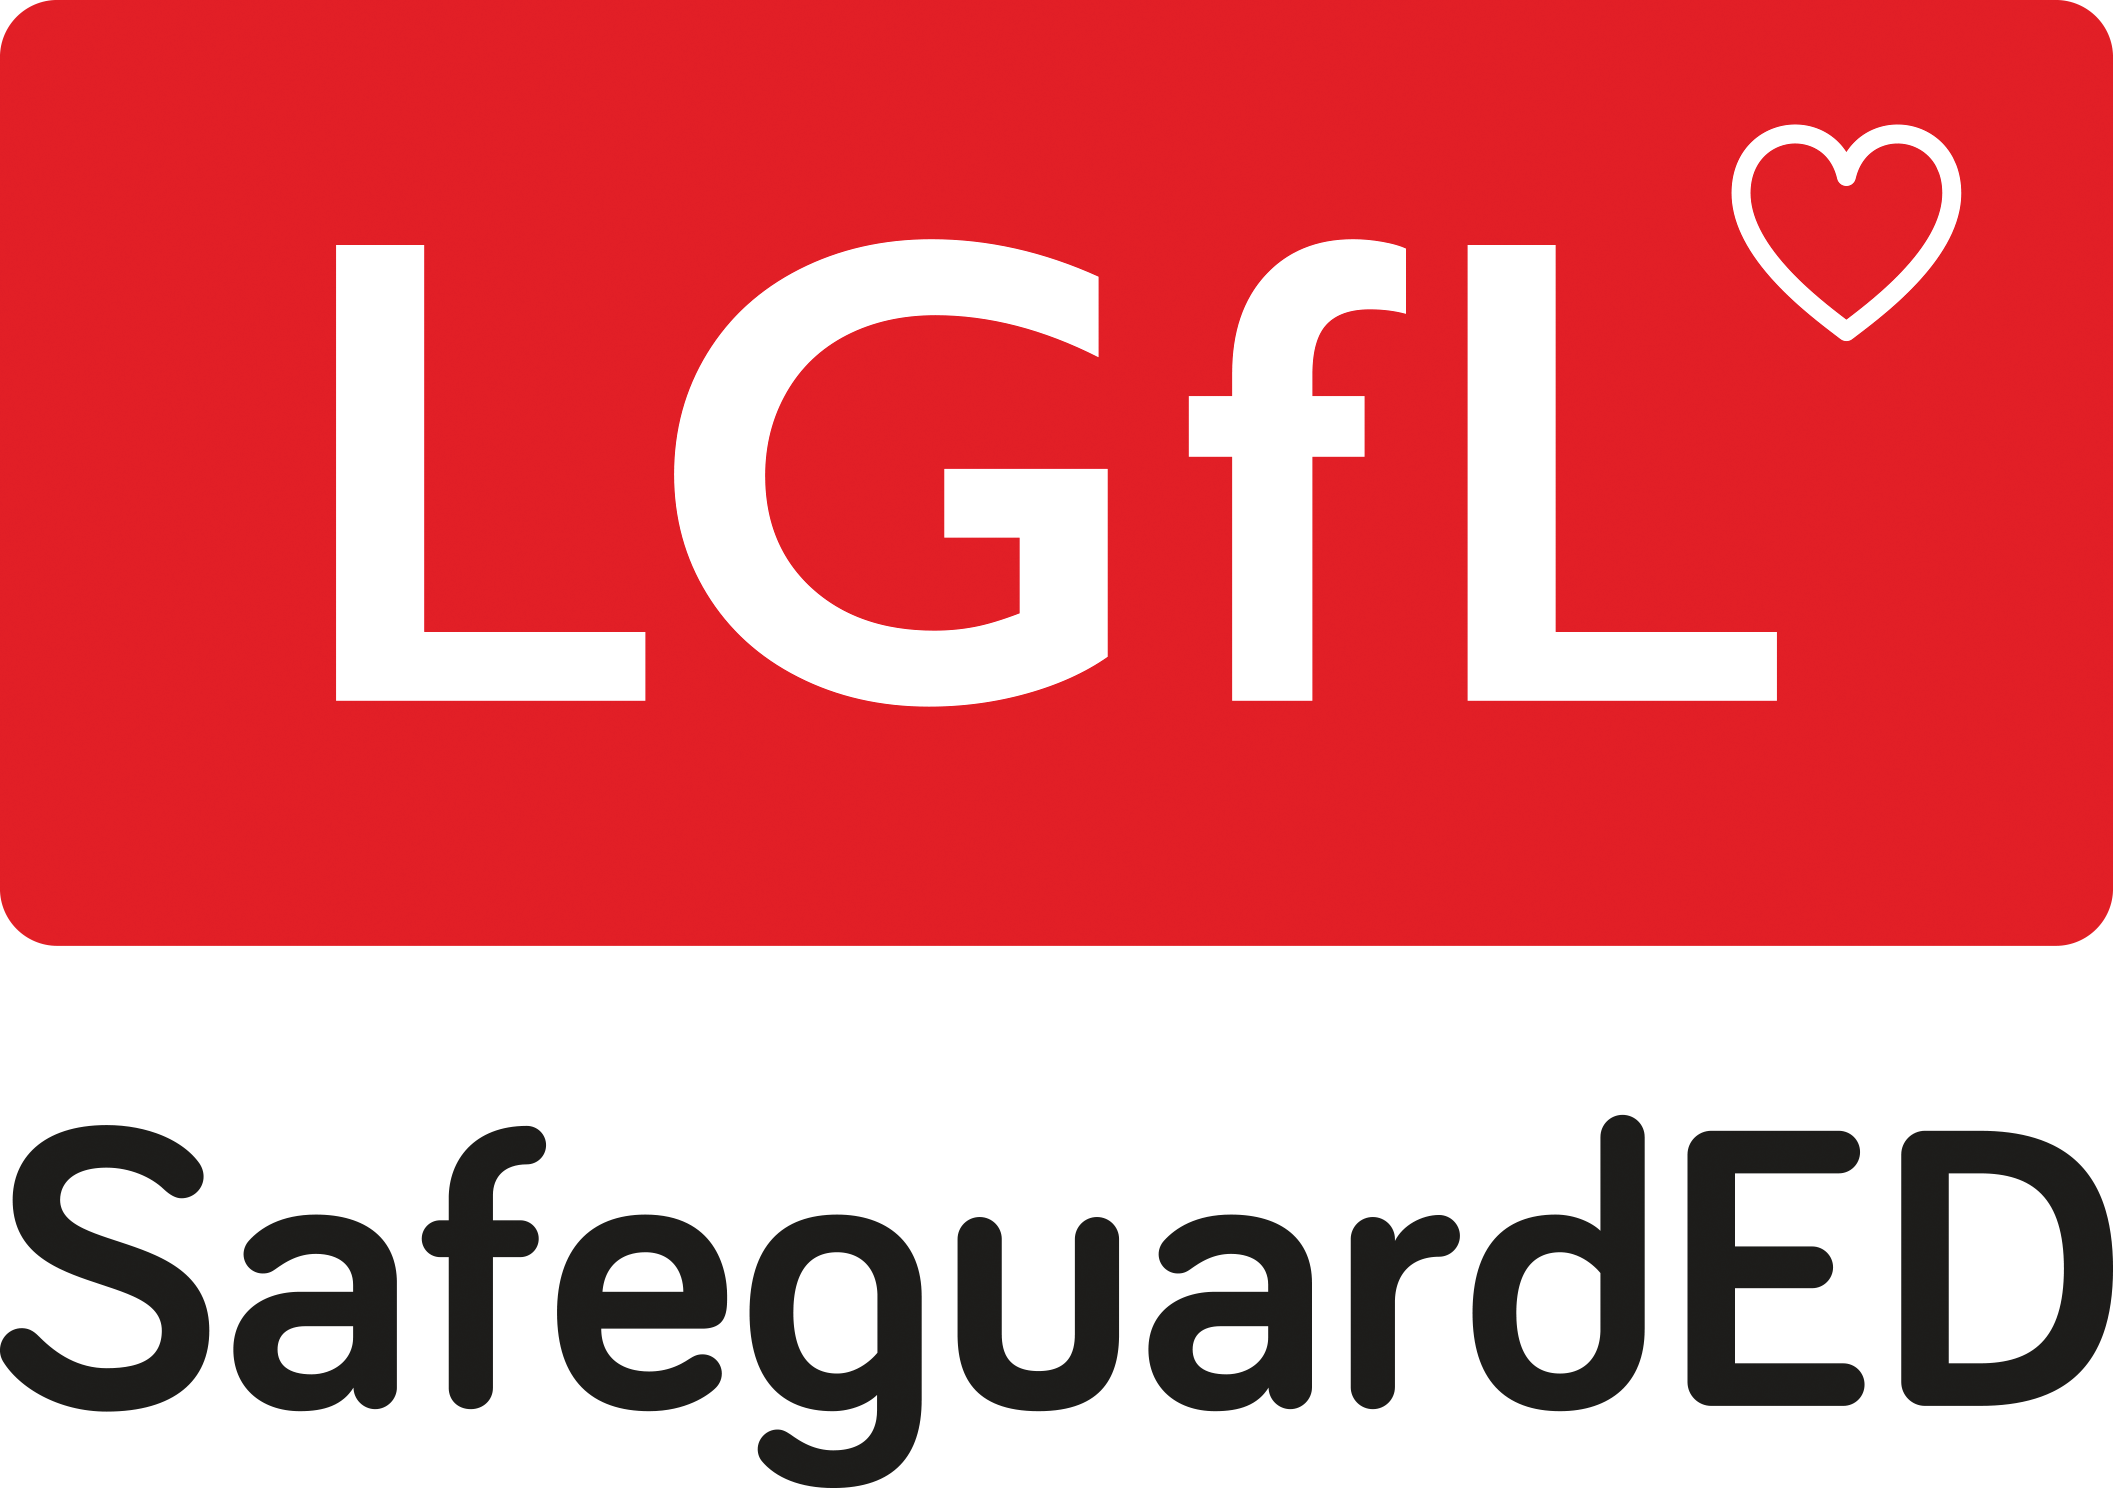 TRANSP-LGfL-SafeguardED-Main-Logo